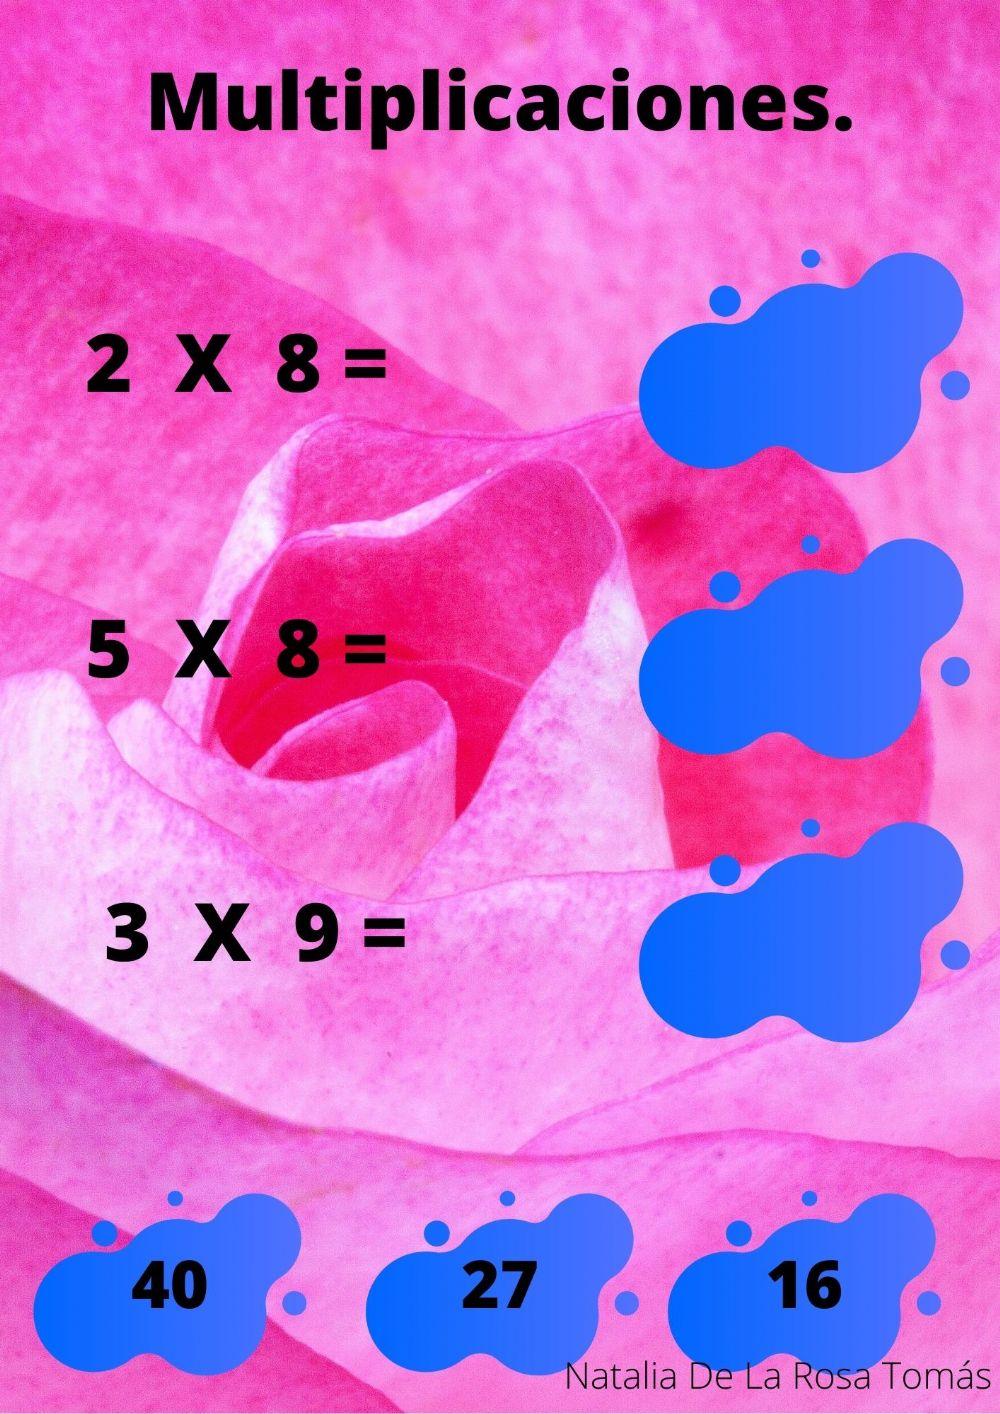 Calcula y arrastra la opción correcta a cada multiplicación.